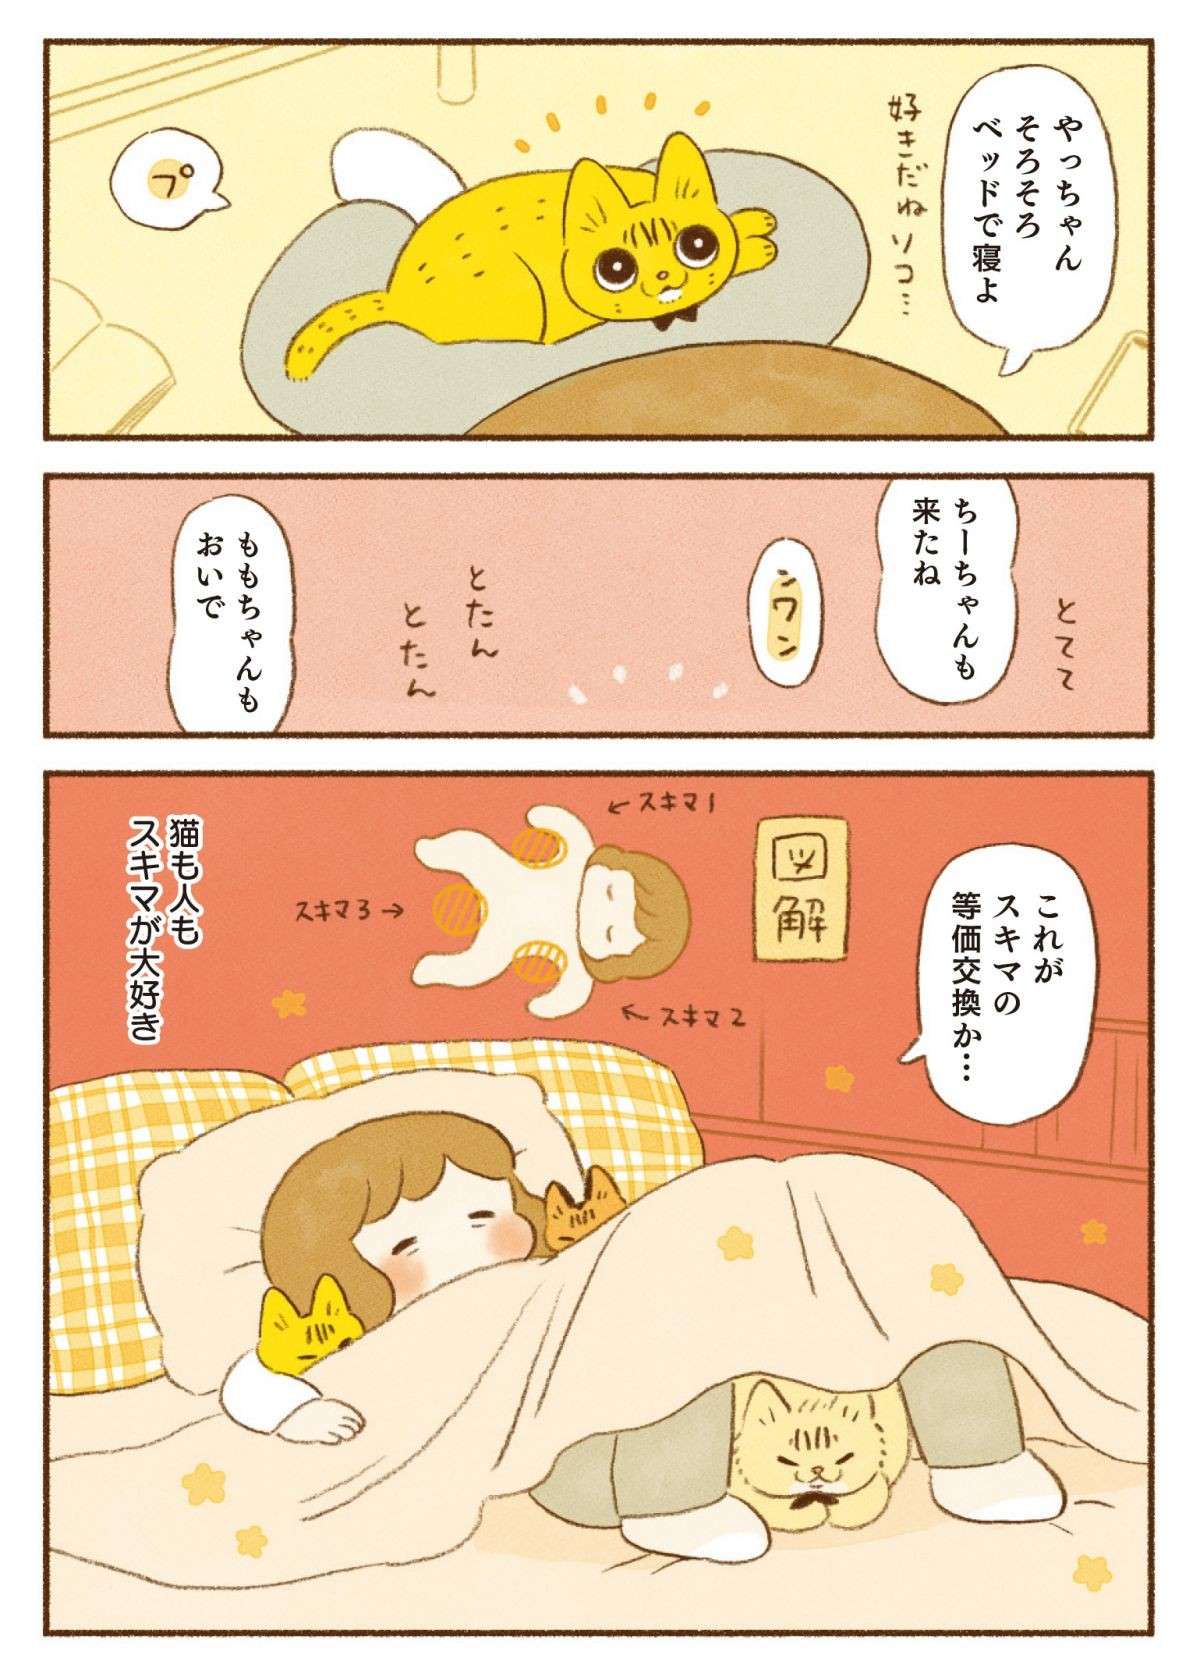 「これがスキマの等価交換」猫と一緒に寝る至福の時／しまねこ3姉妹と暮らしています 13.jpg